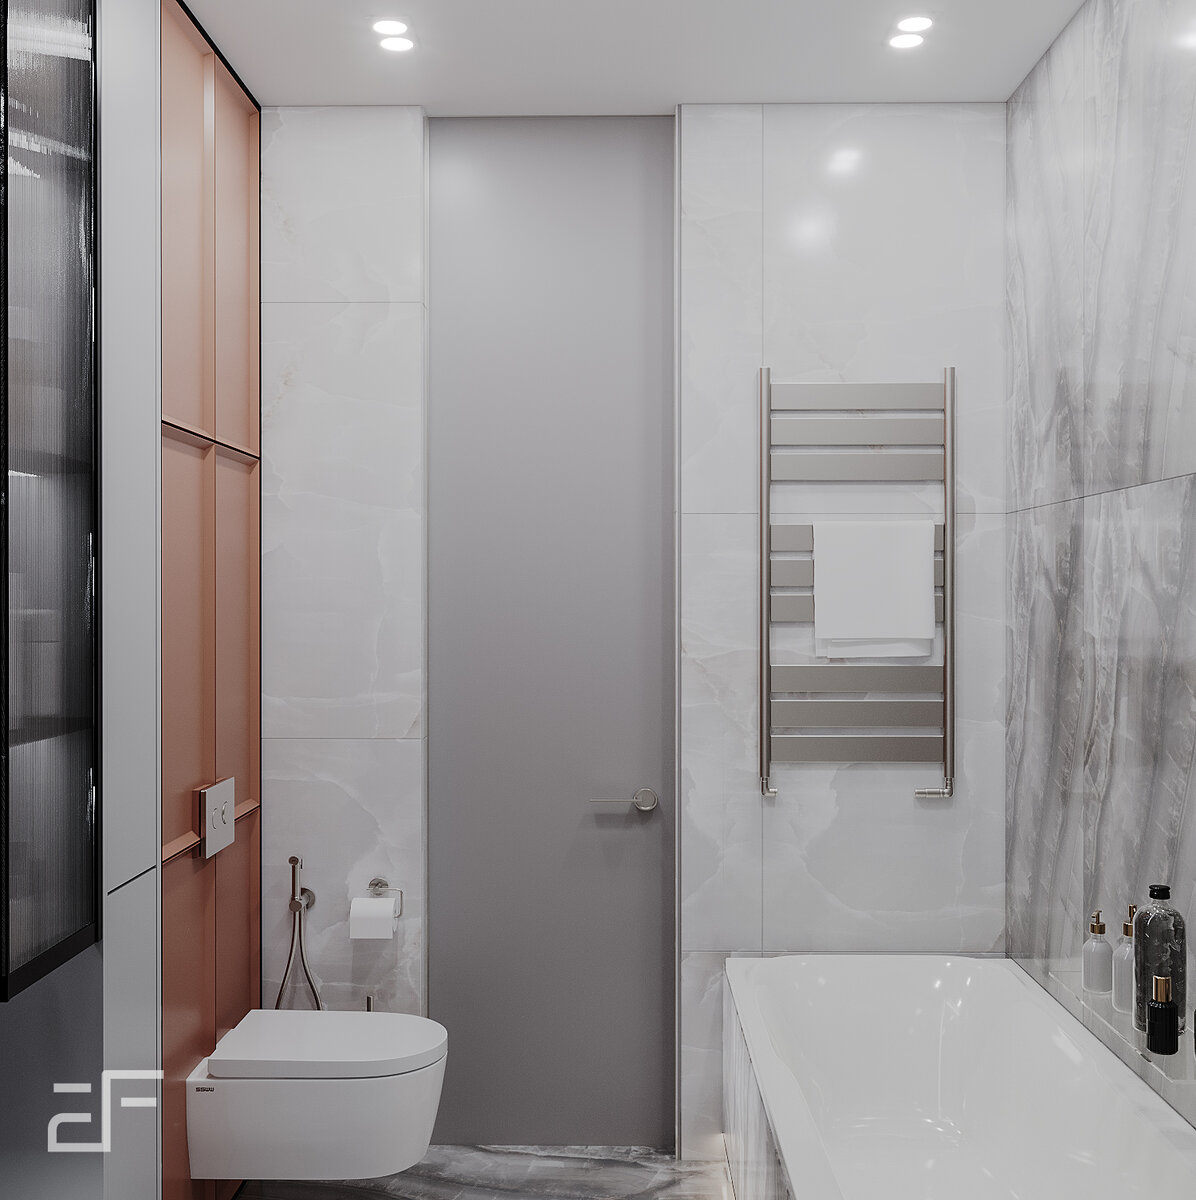 Интерьер ванной комнаты фото в современном стиле маленького размера